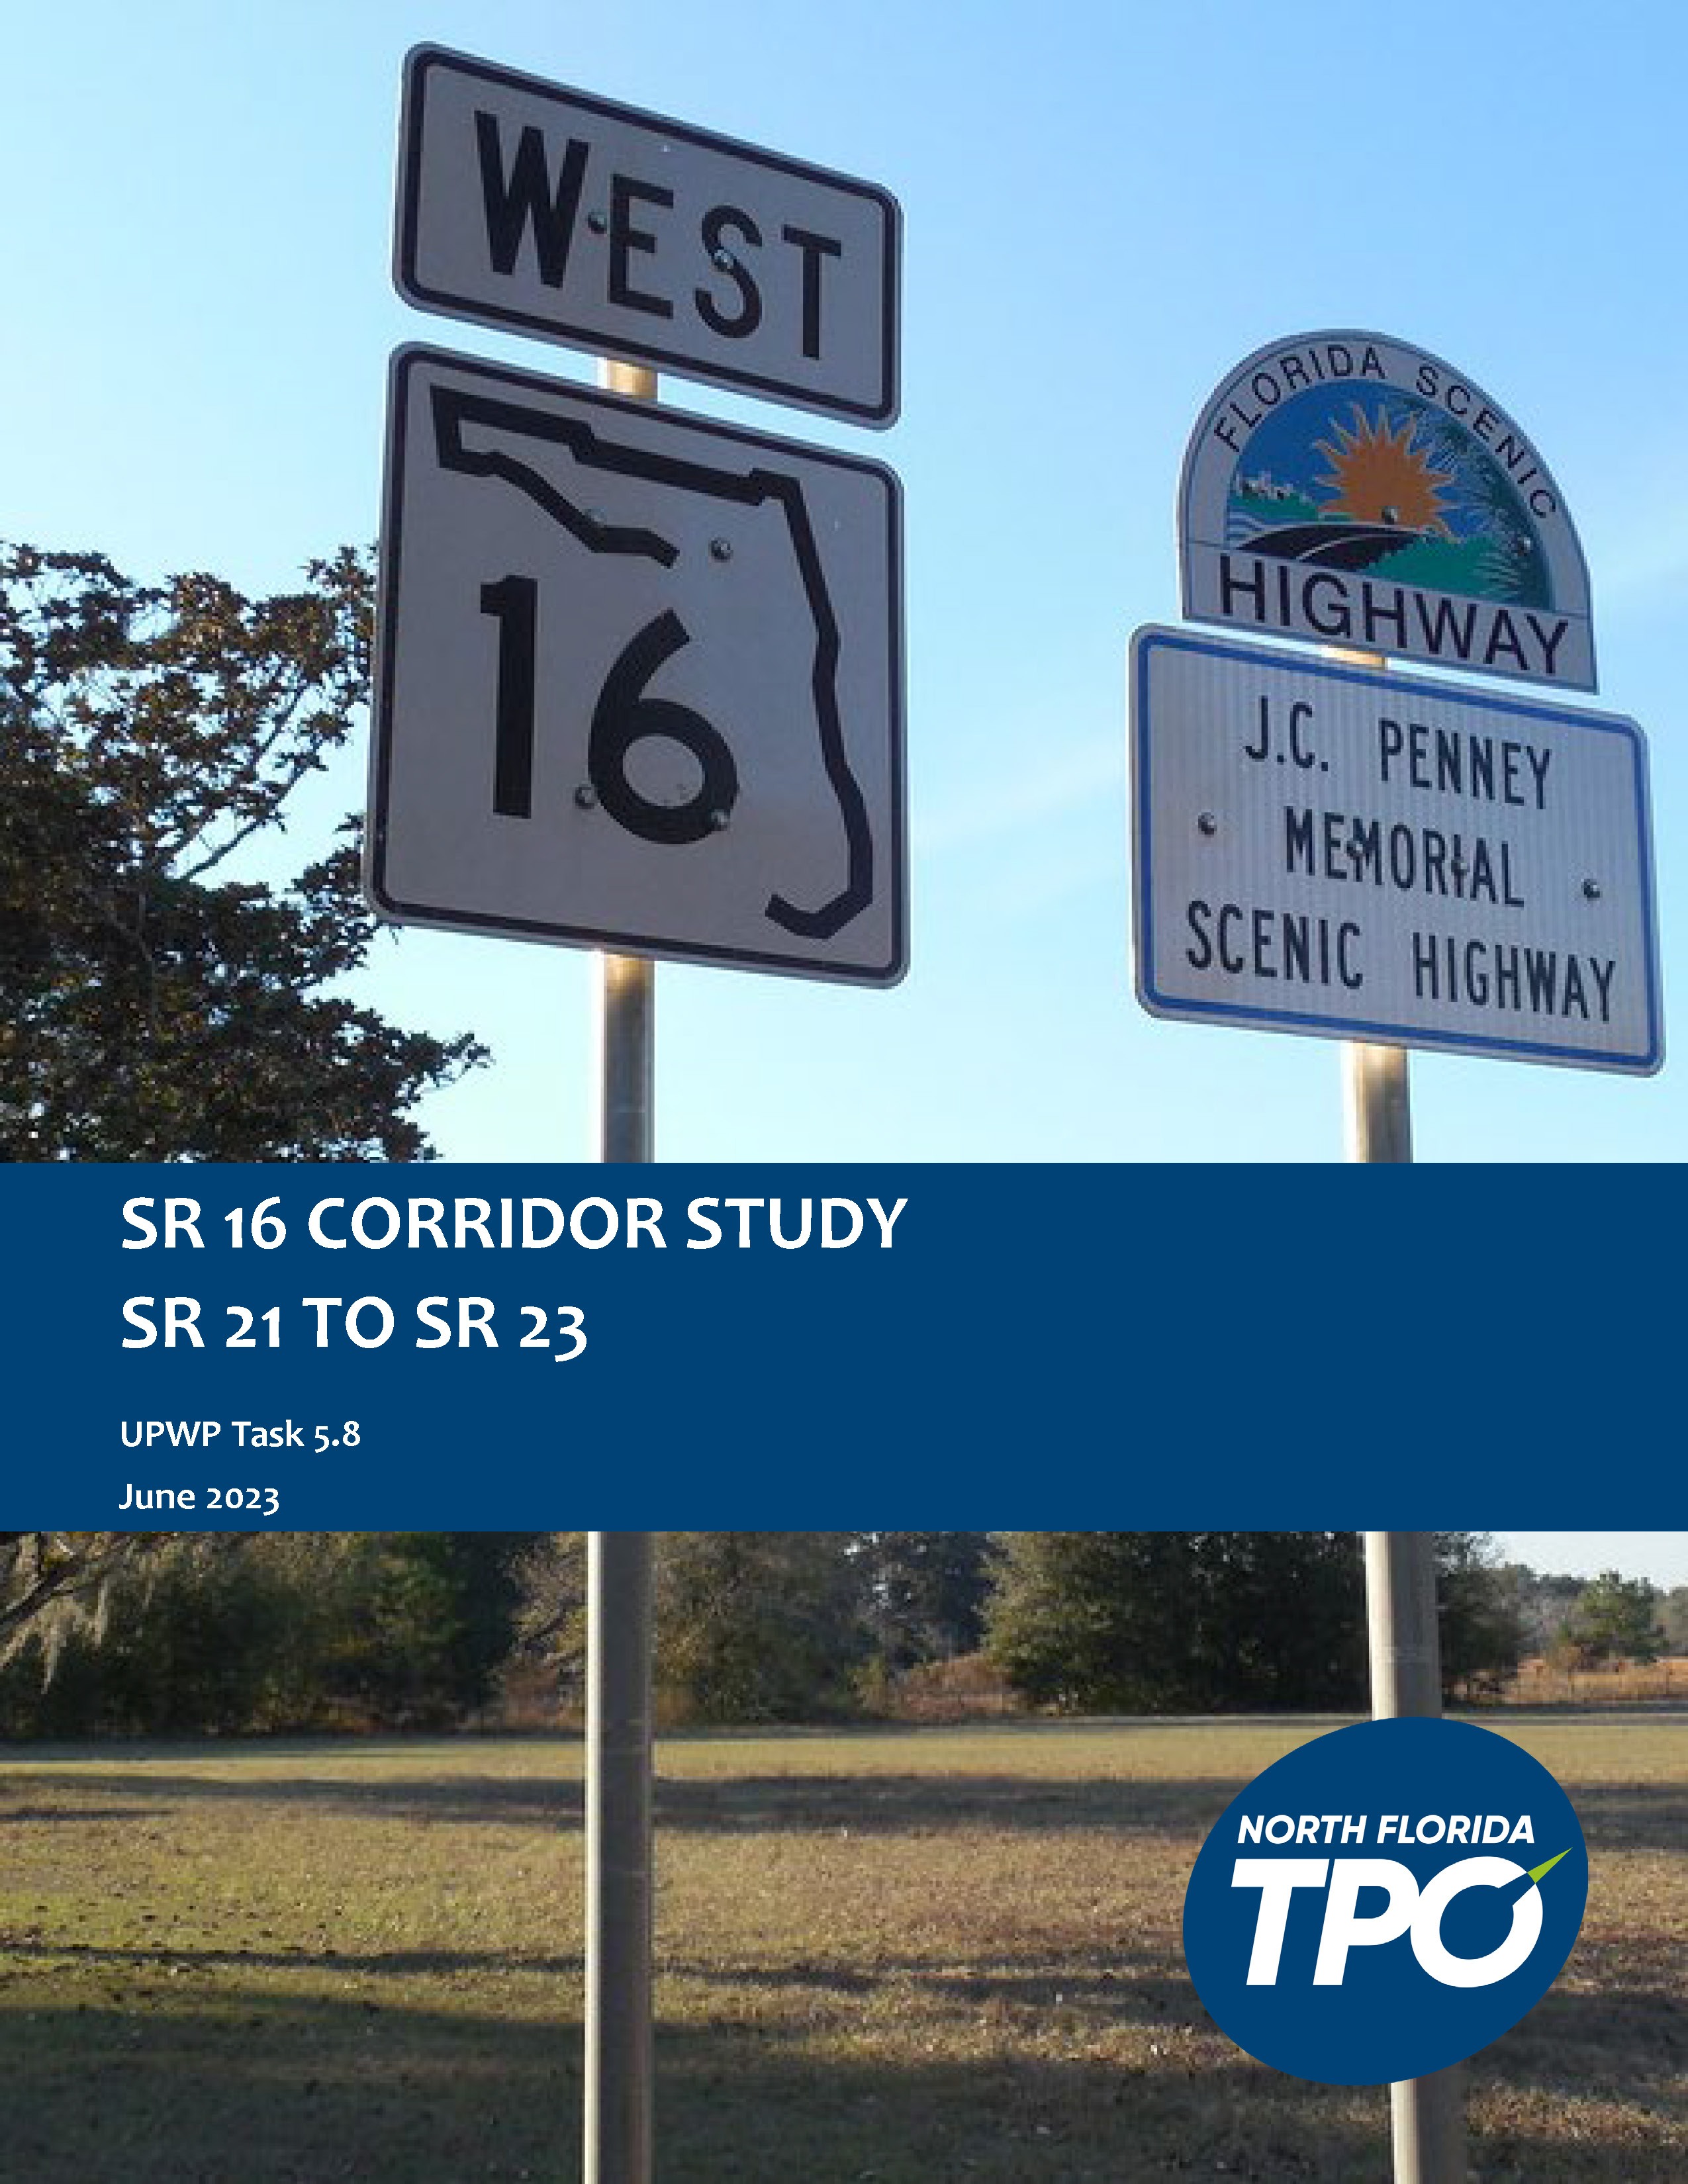 SR 16 Corridor Study cover